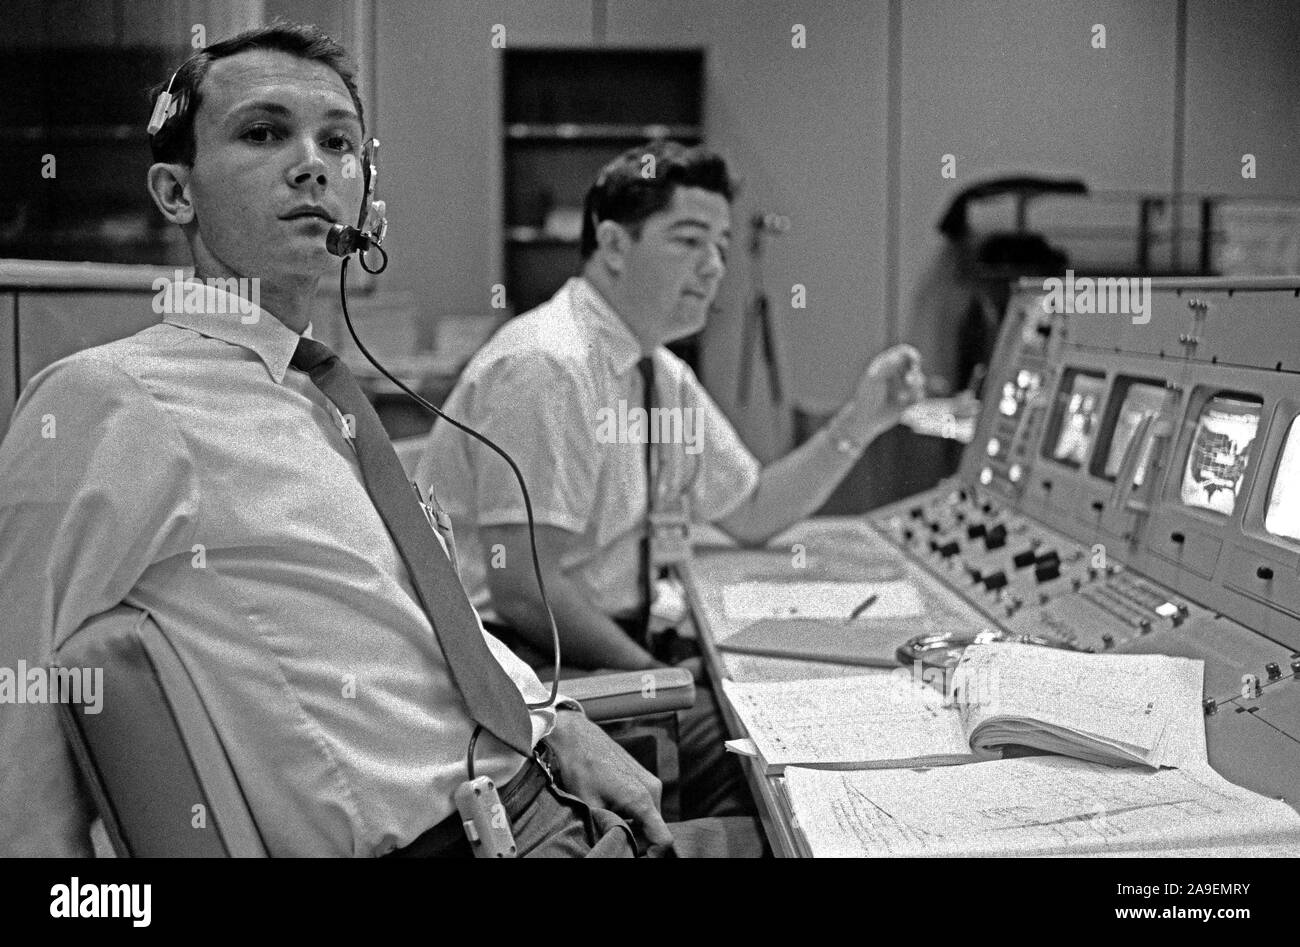 S68-50696 (octobre 1968) --- Bureau des affaires publiques (OAP) commentateur Douglas K. Ward (premier plan) est photographié à sa console dans la salle de contrôle des opérations de Mission (MOCR) dans le centre de contrôle de mission au Centre spatial Johnson de la NASA pendant le vol d'Apollo 7. Crédit photo : NASA Banque D'Images